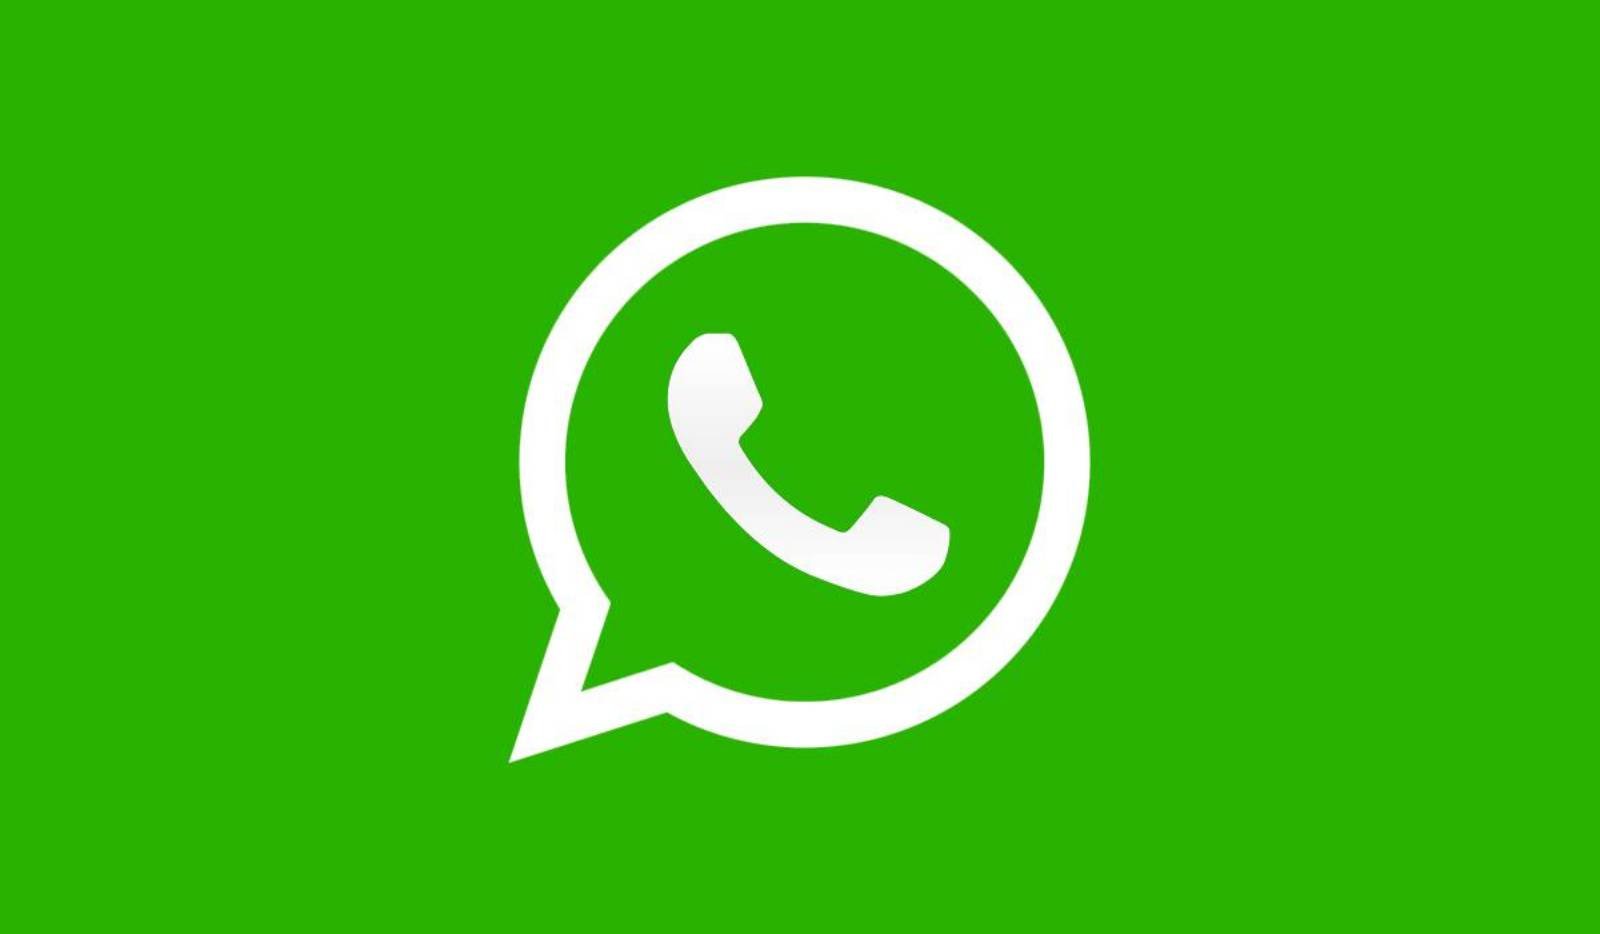 WhatsApp companies